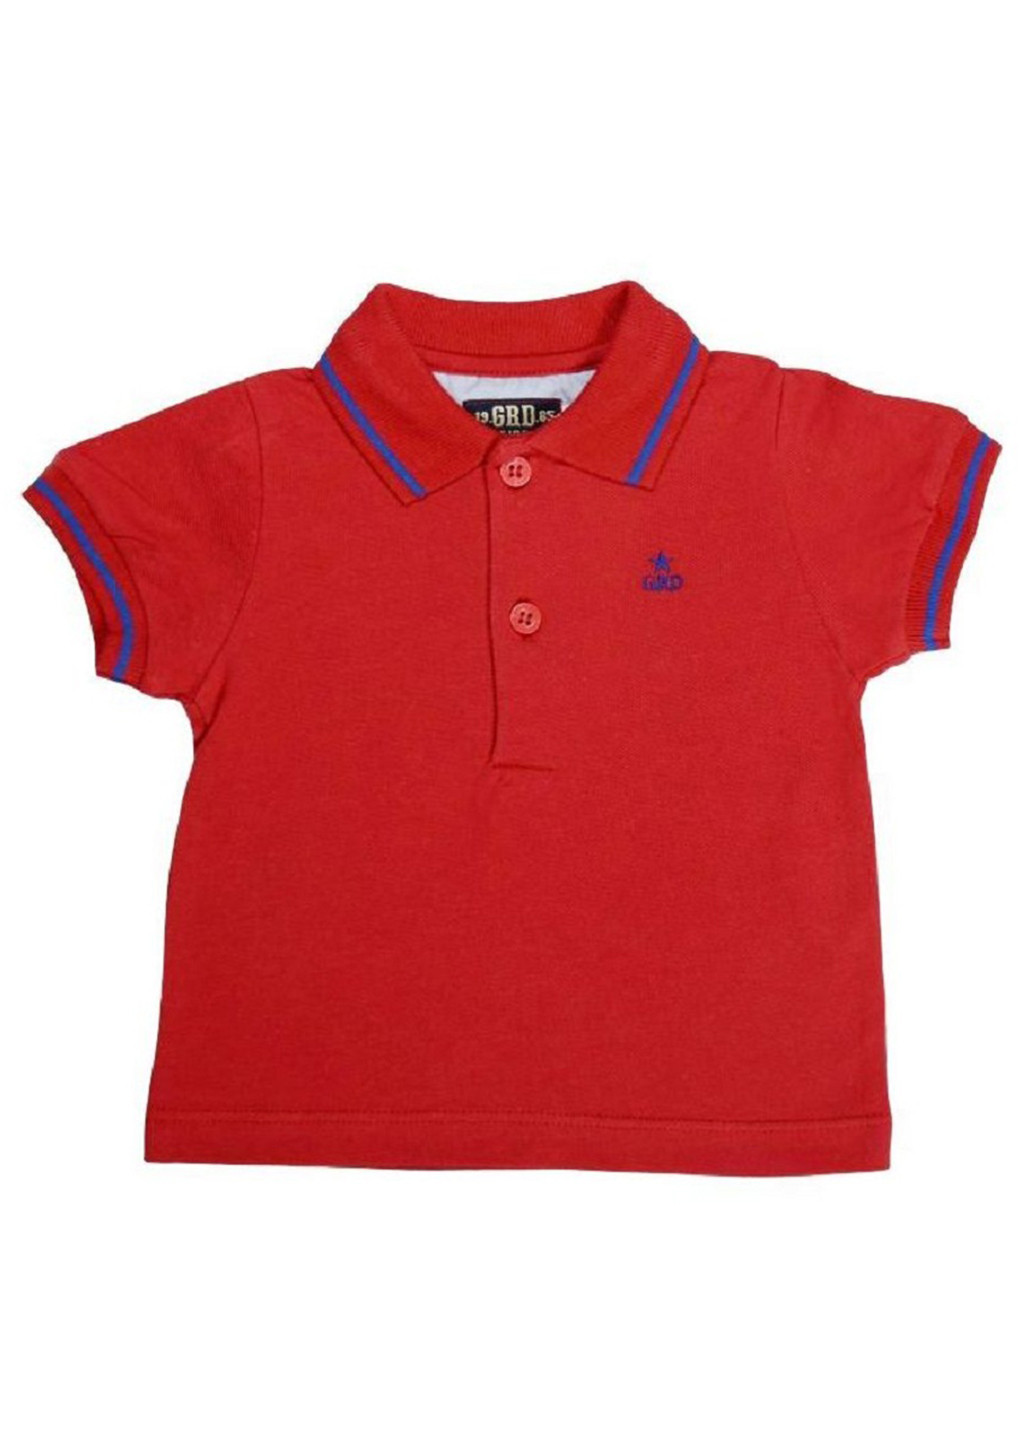 Красная детская футболка-поло для девочки Girandola с рисунком